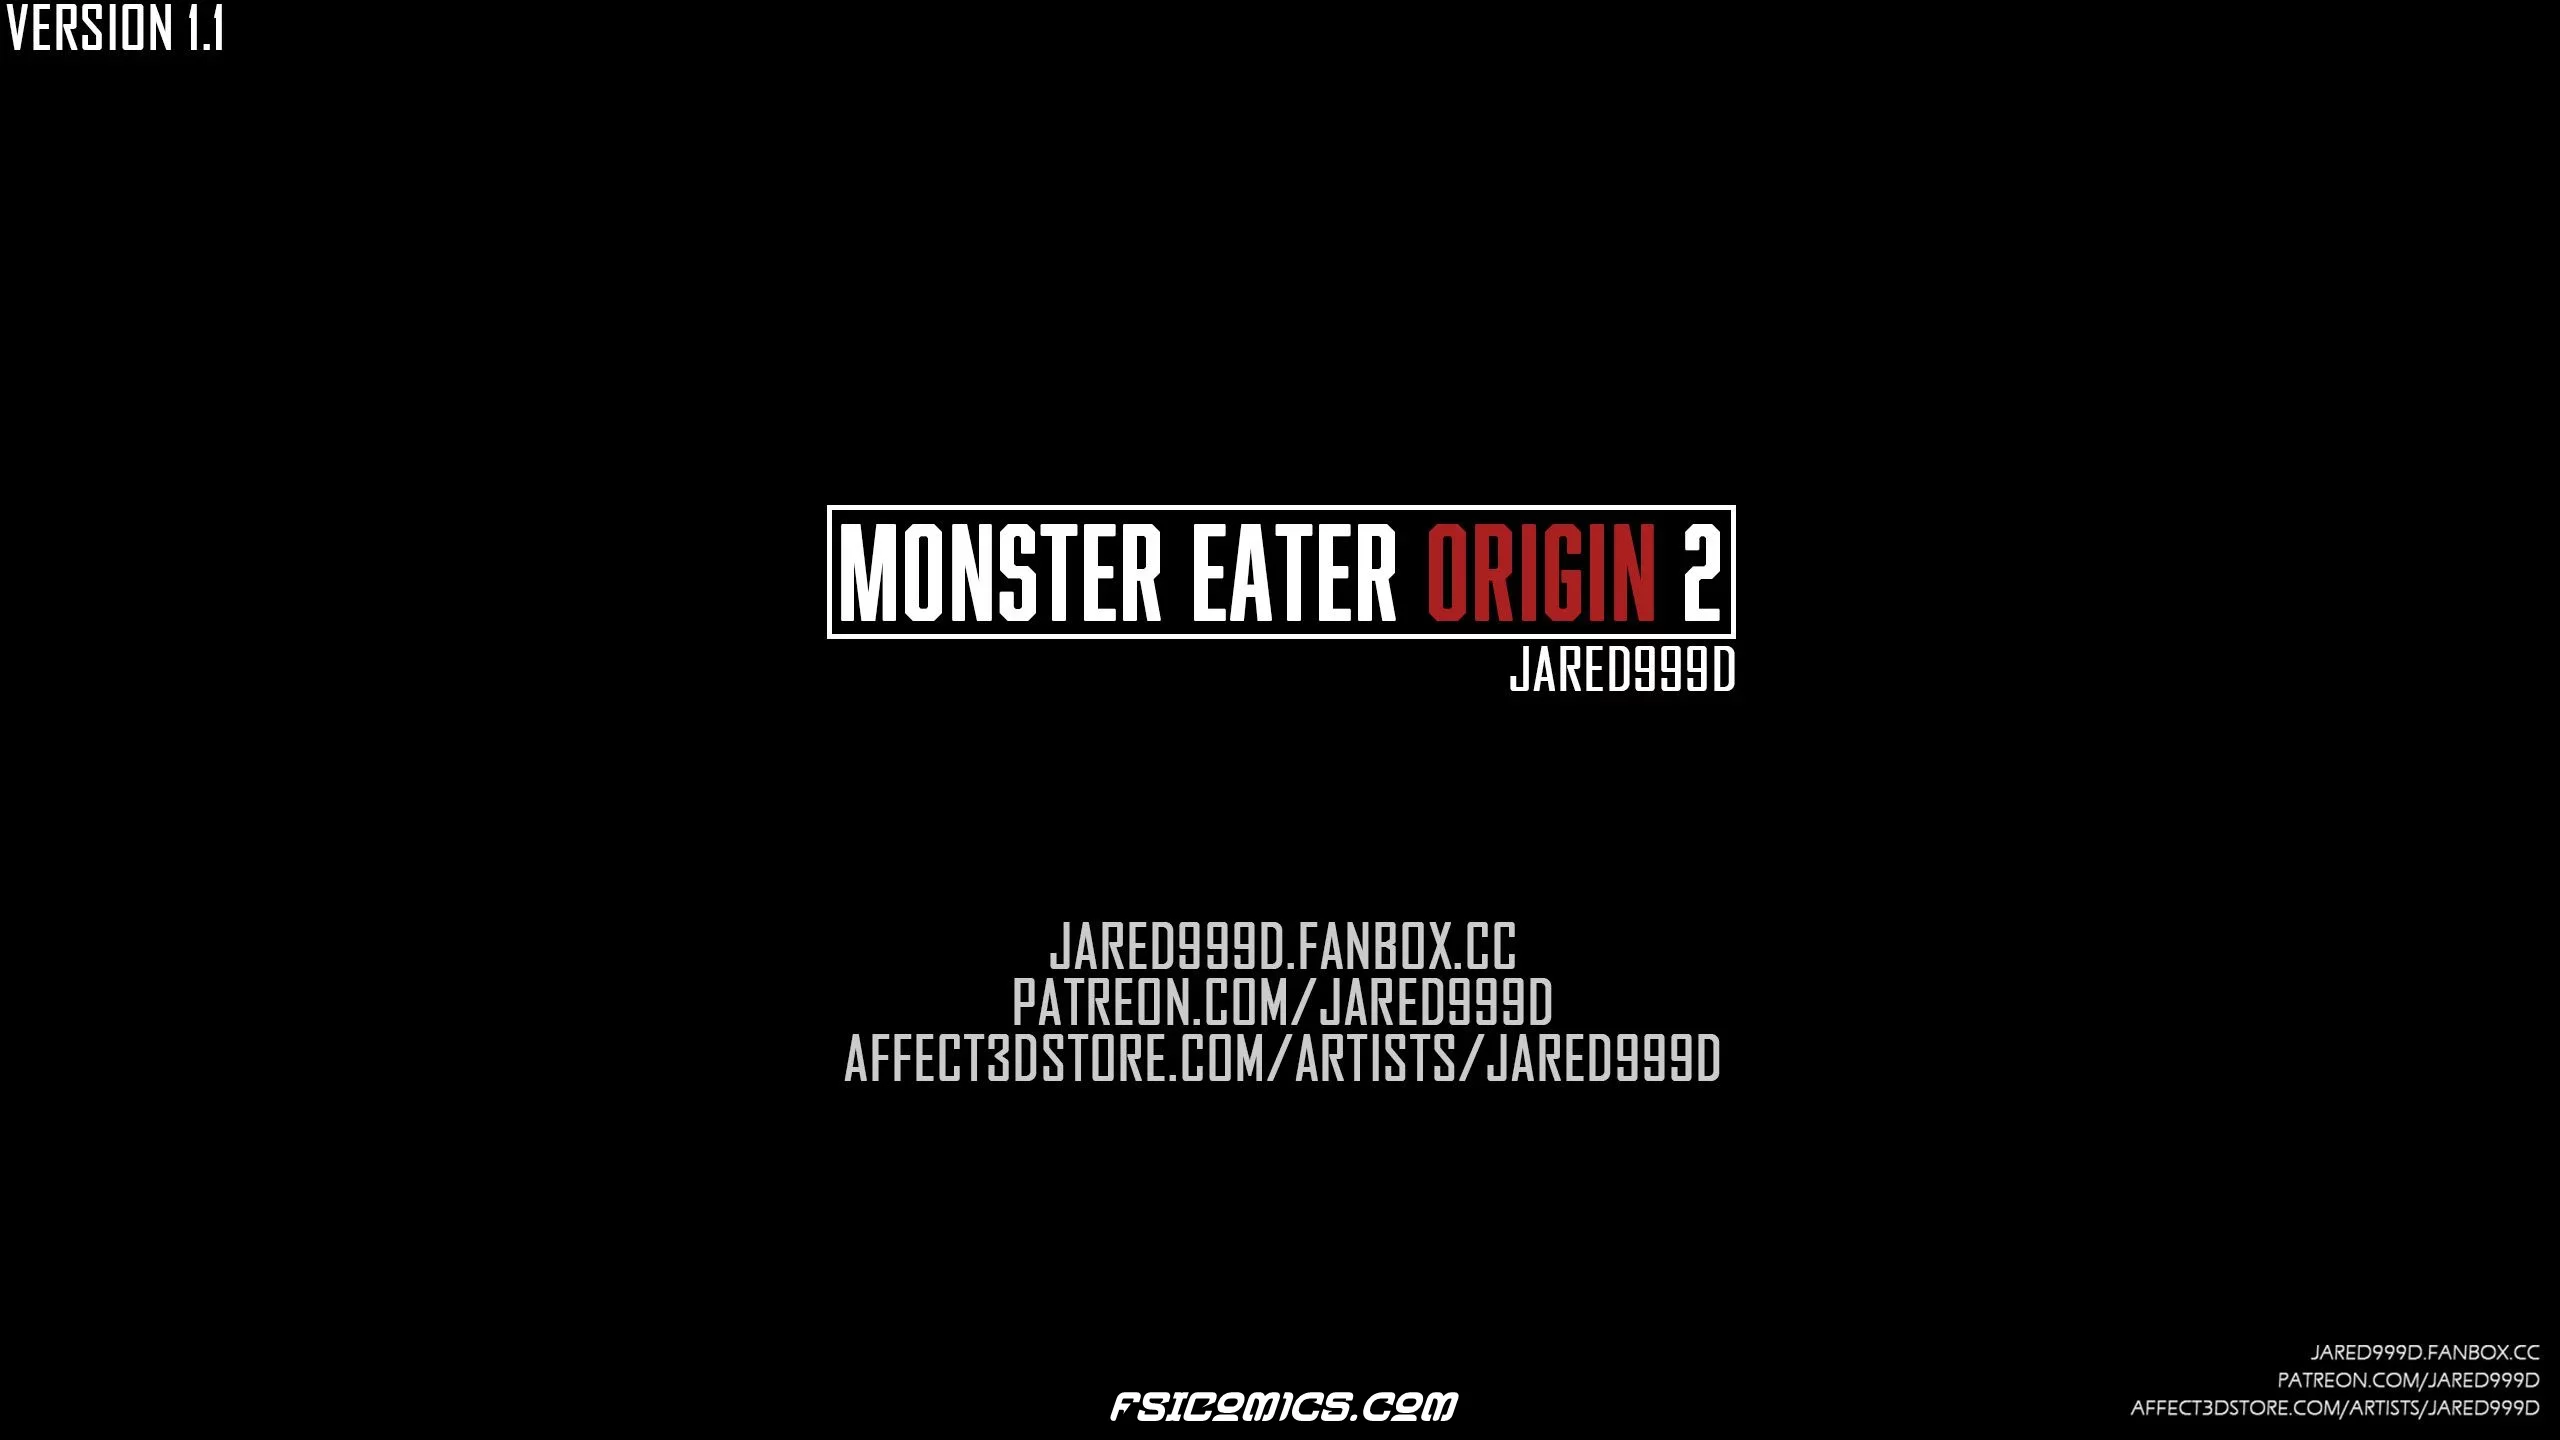 Monster Eater Origins Chapter 2 - Jared999D - 3 - FSIComics